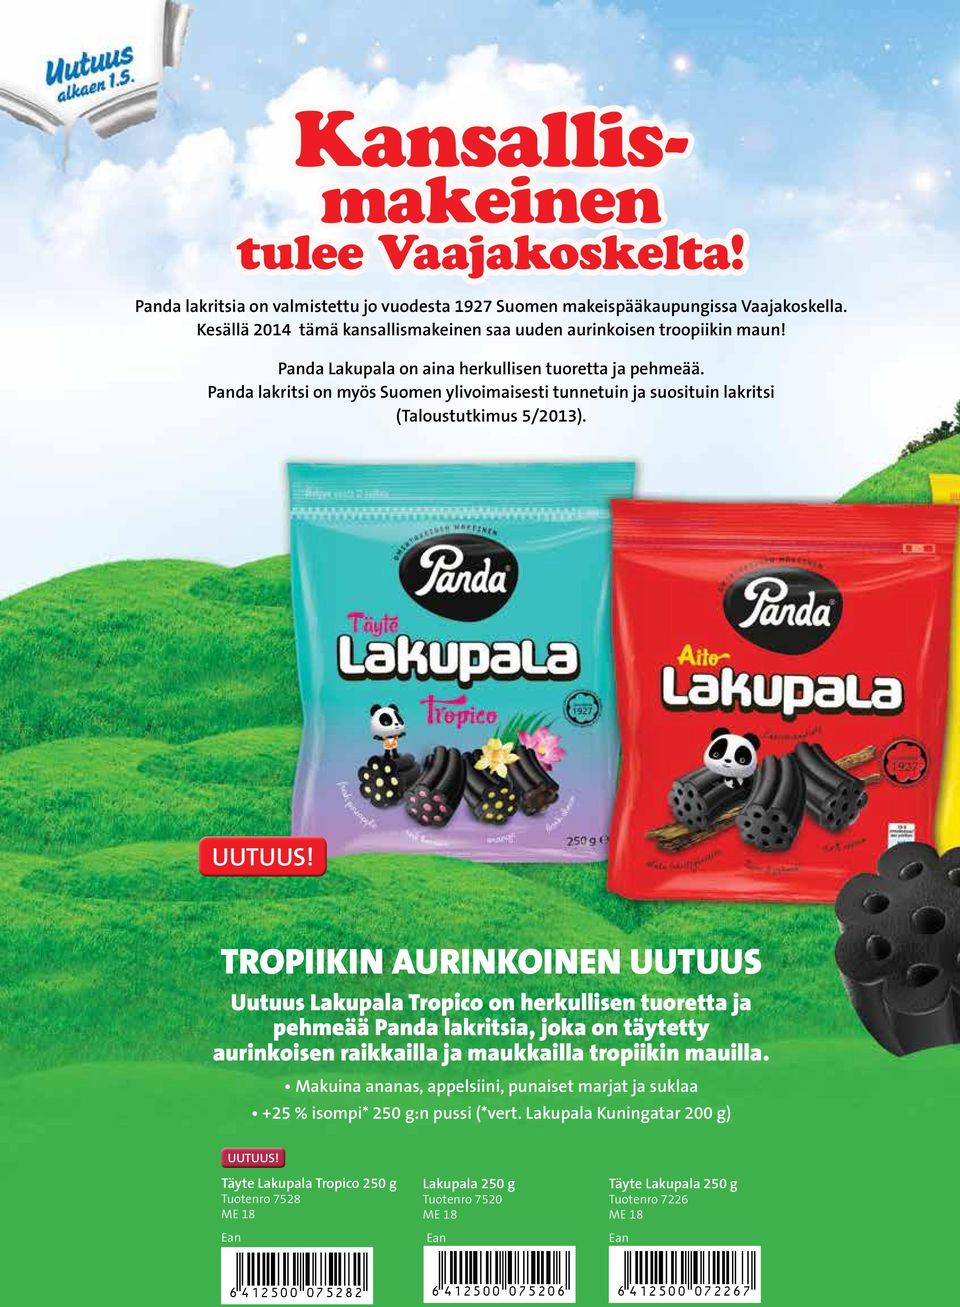 Panda lakritsi on myös Suomen ylivoimaisesti tunnetuin ja suosituin lakritsi (Taloustutkimus 5/2013).